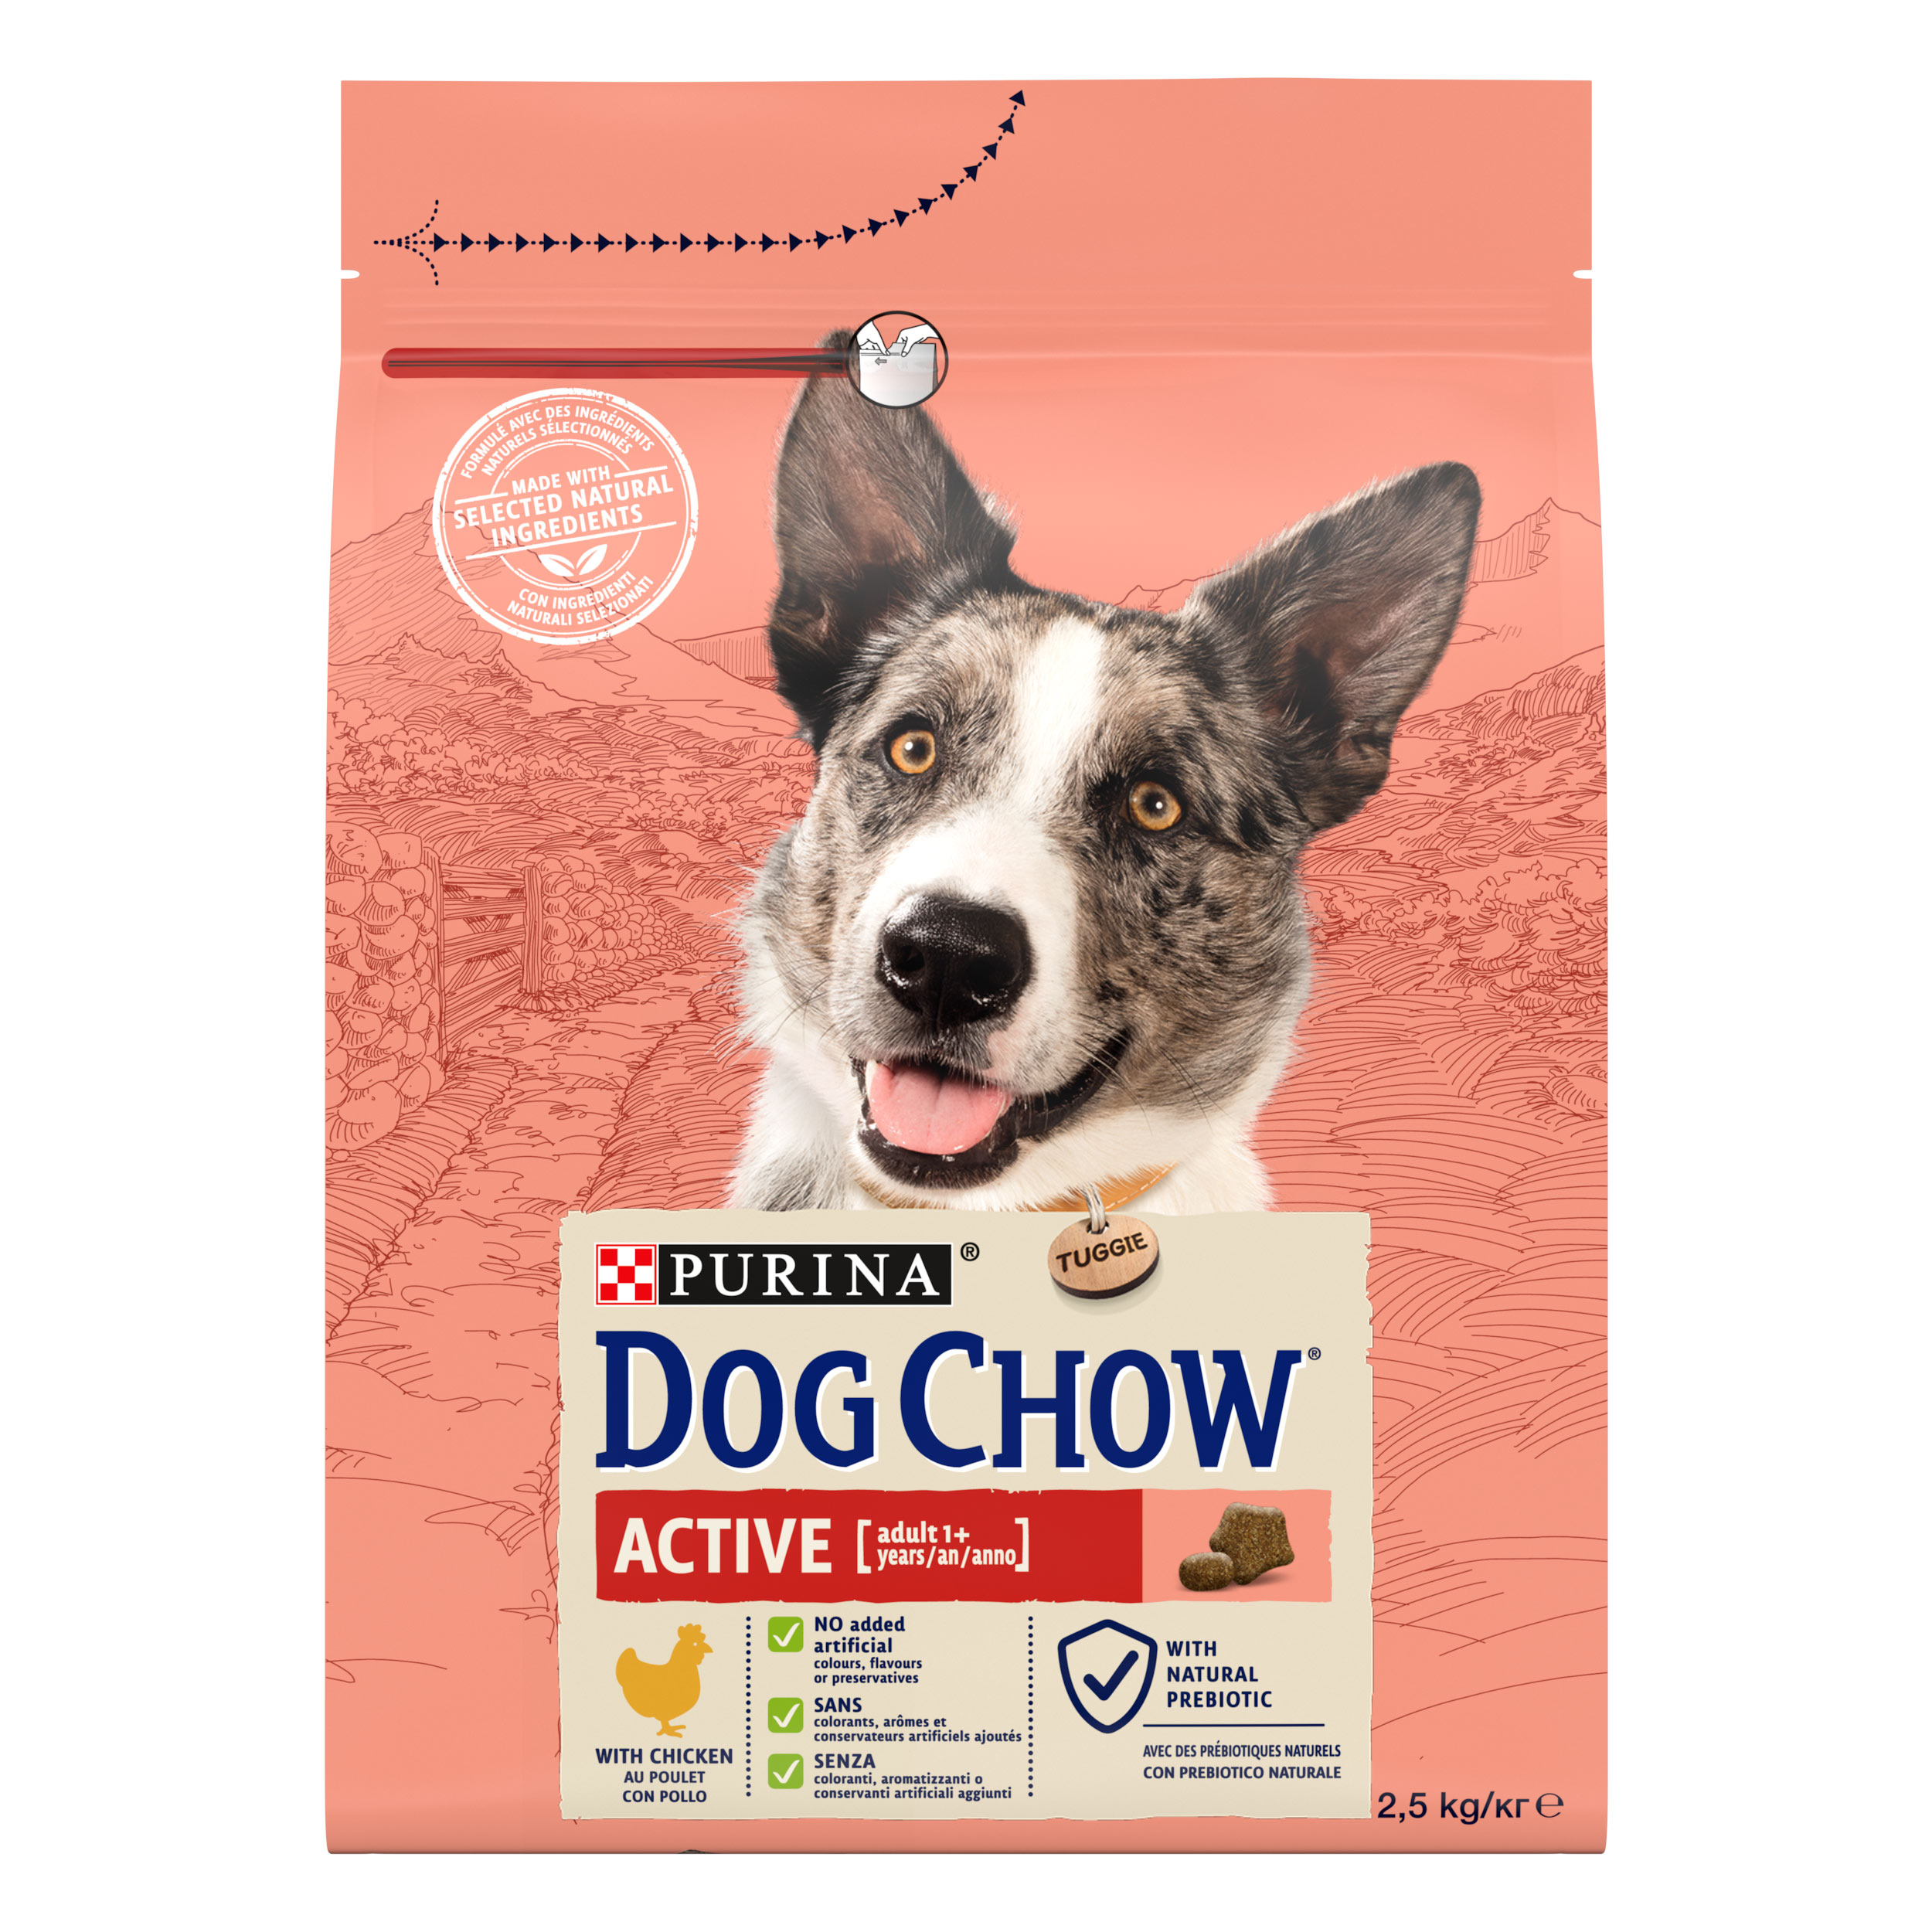 Сухой корм для собак с повышенной активностью Dog Chow Active Adult 1+, с курицей, 2,5 кг - фото 1